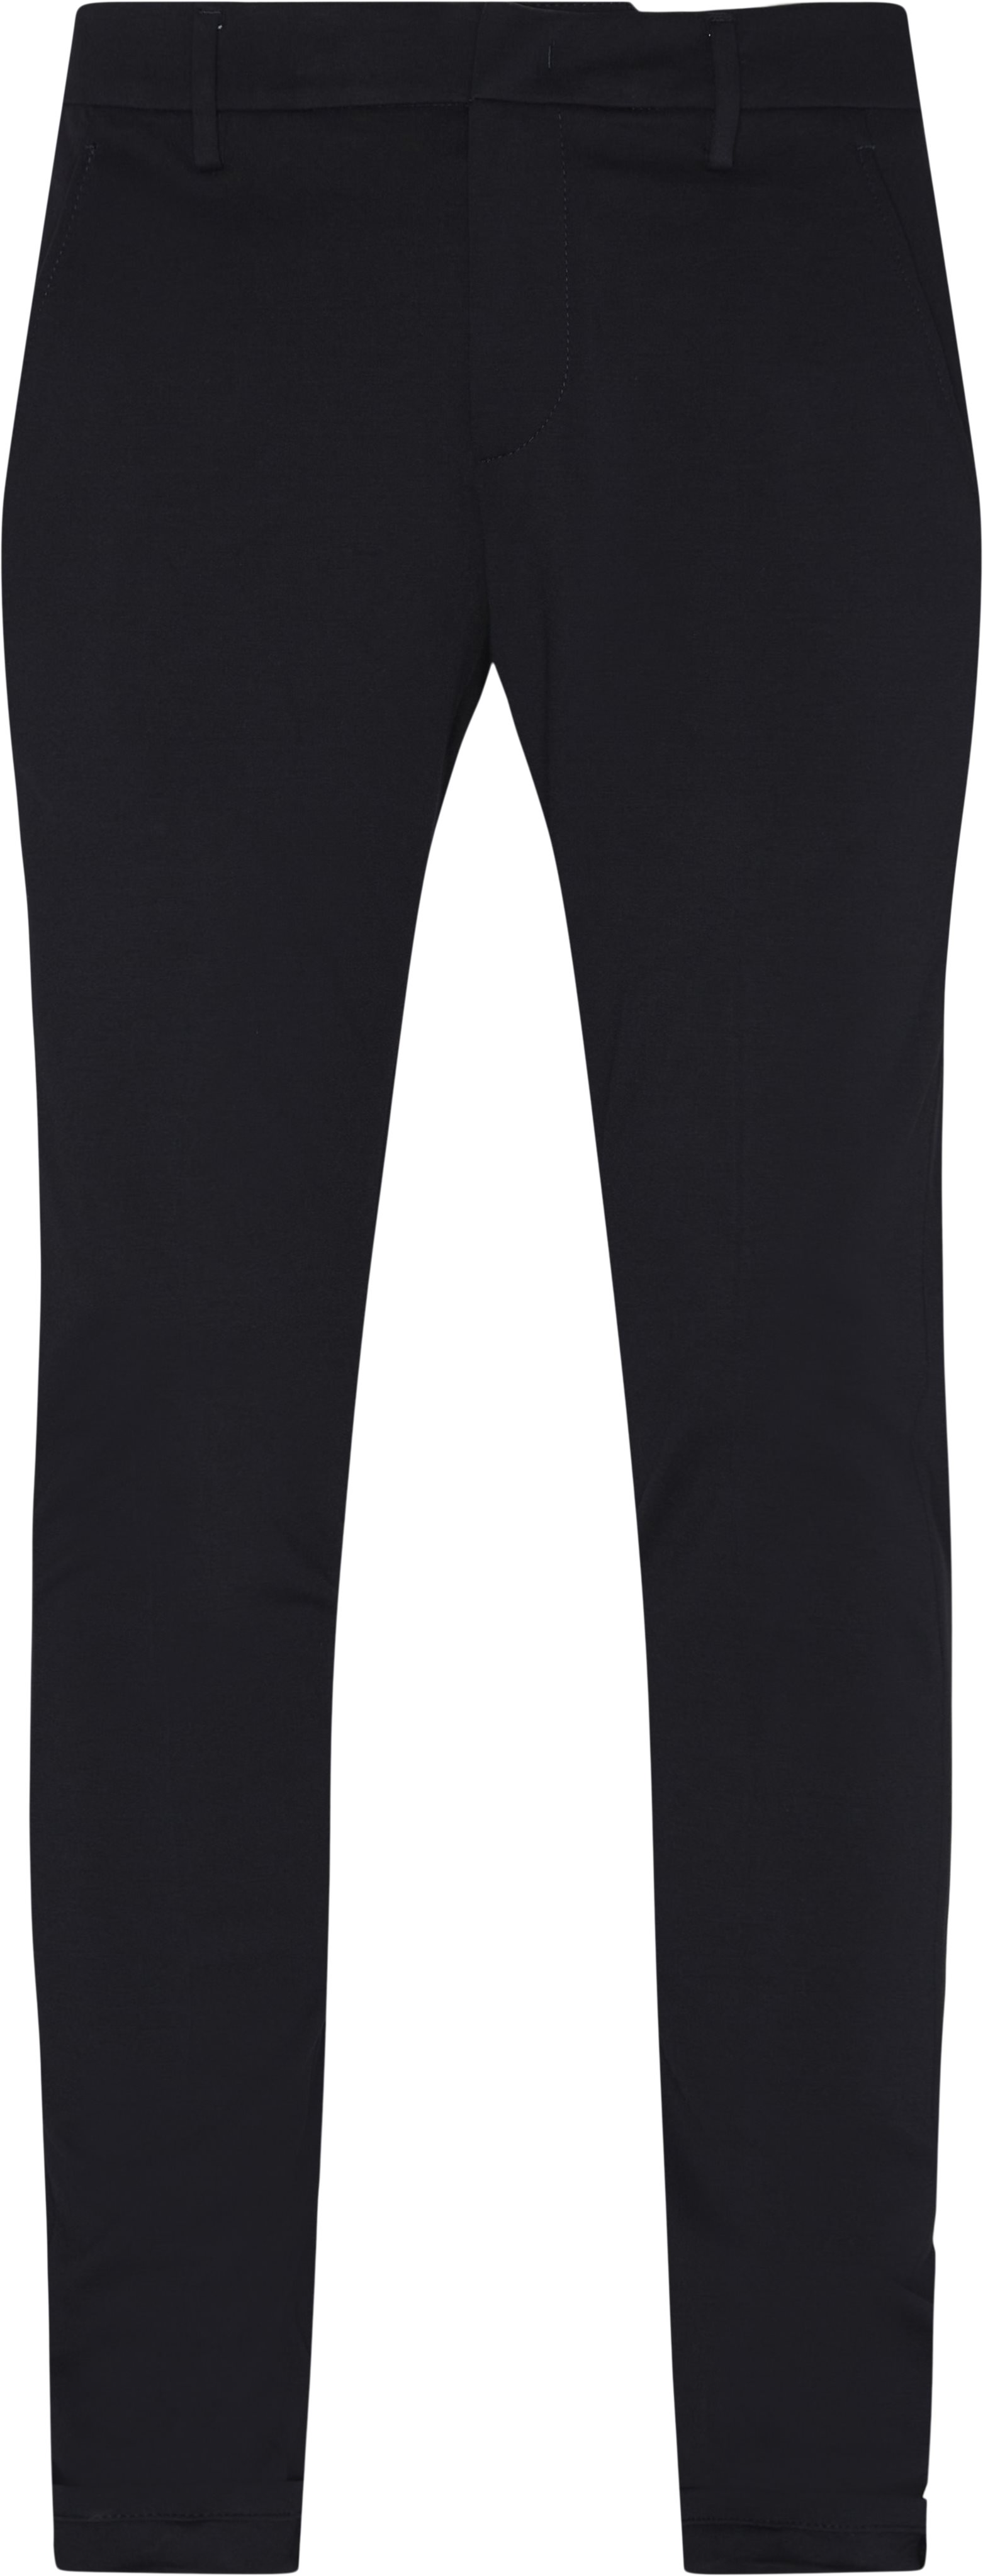 Comfort Pants - Bukser - Slim fit - Blå